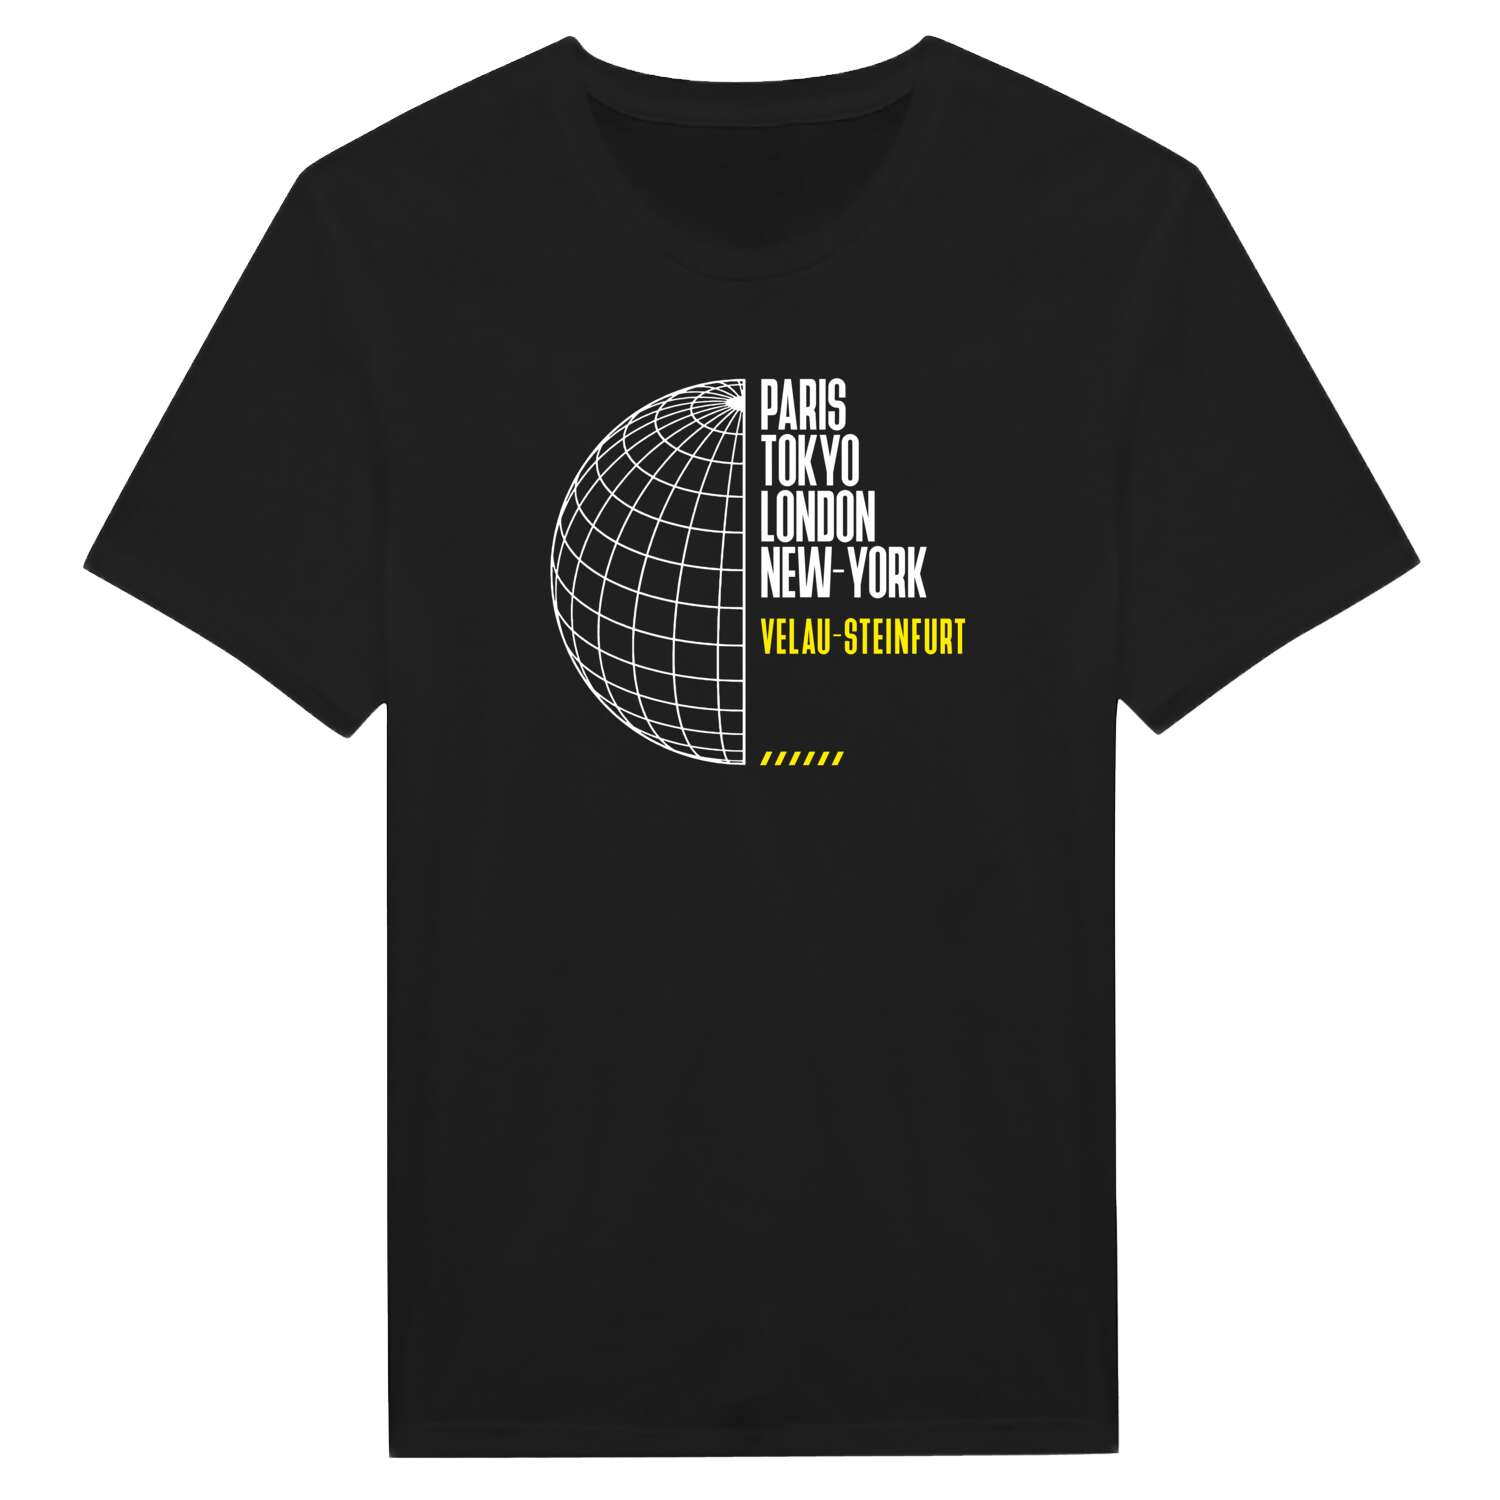 Velau-Steinfurt T-Shirt »Paris Tokyo London«